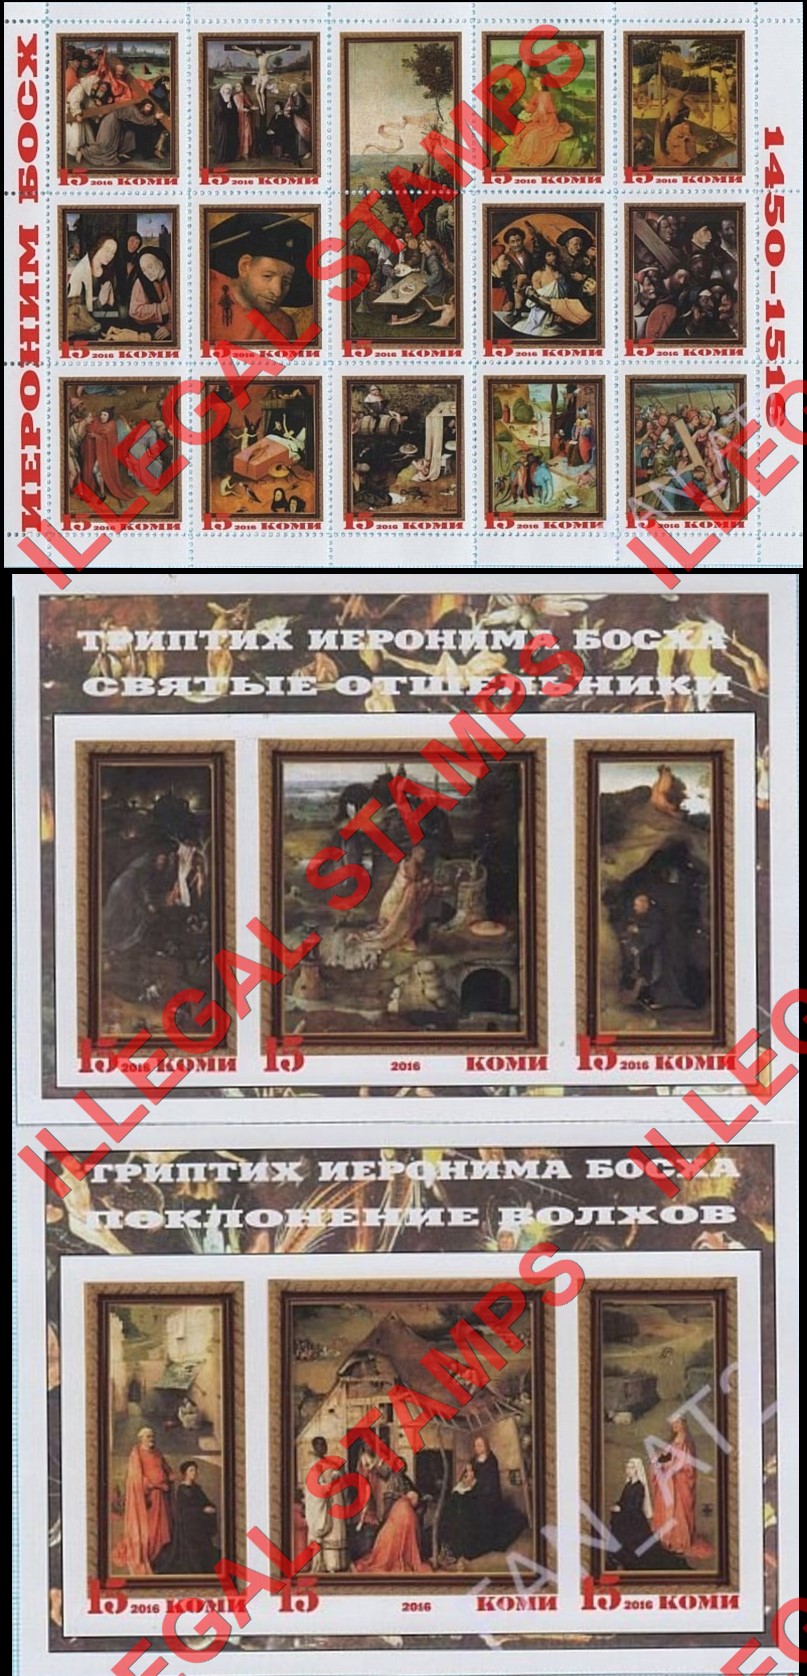 Komi Republic 2016 Counterfeit Illegal Stamps